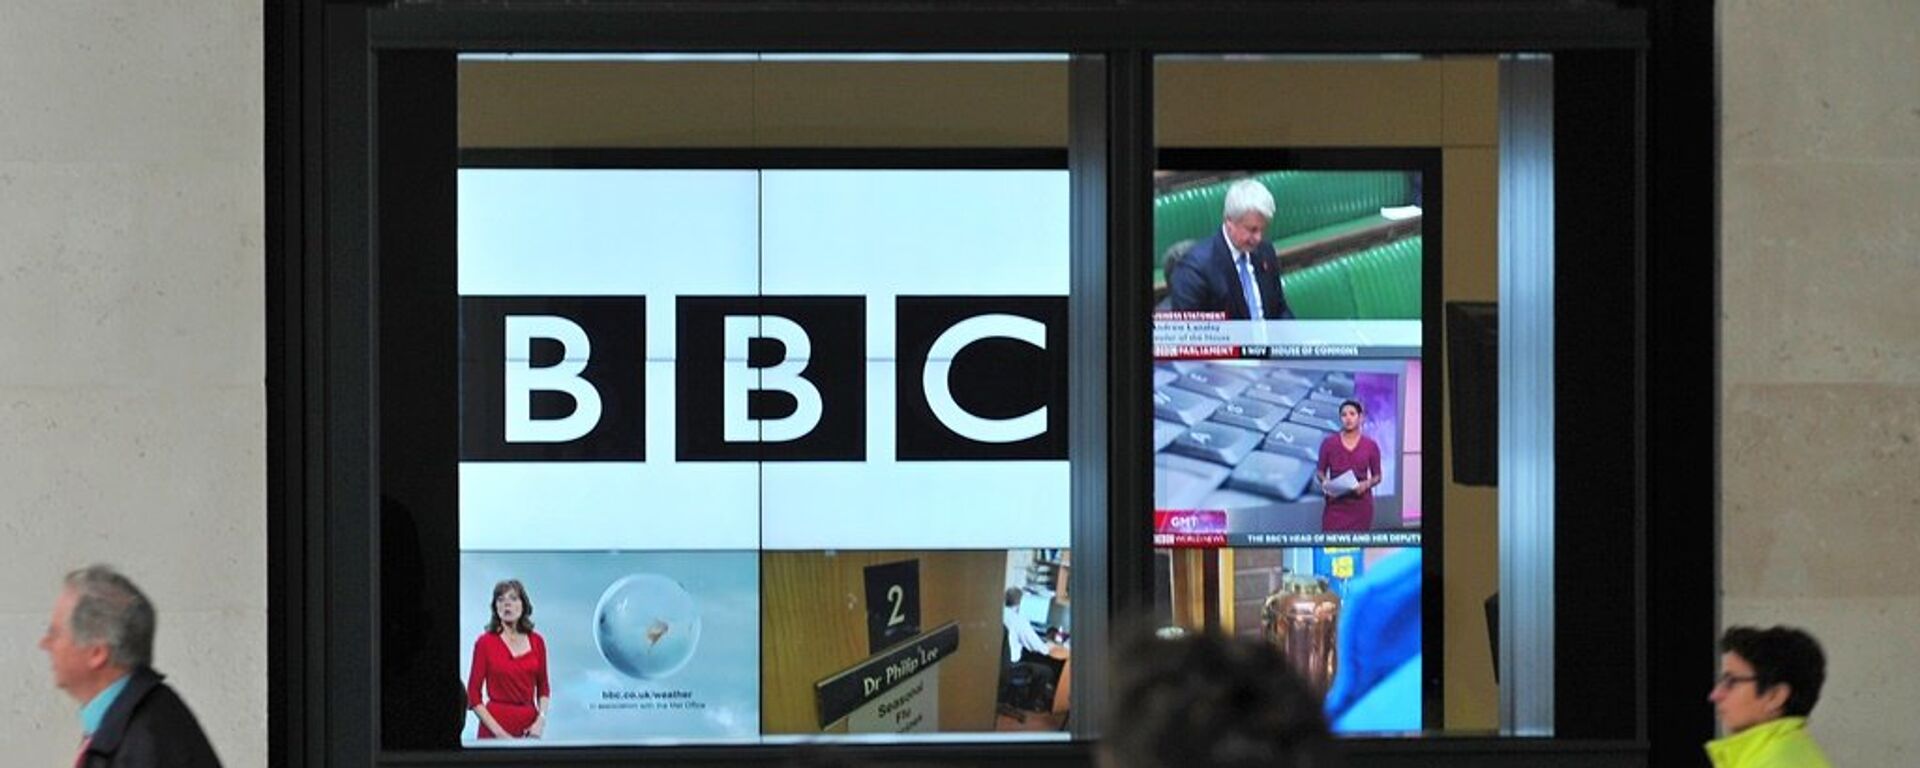 Лого Би-би-сија на екрану у новој згради у Лондону. - Sputnik Србија, 1920, 26.05.2018